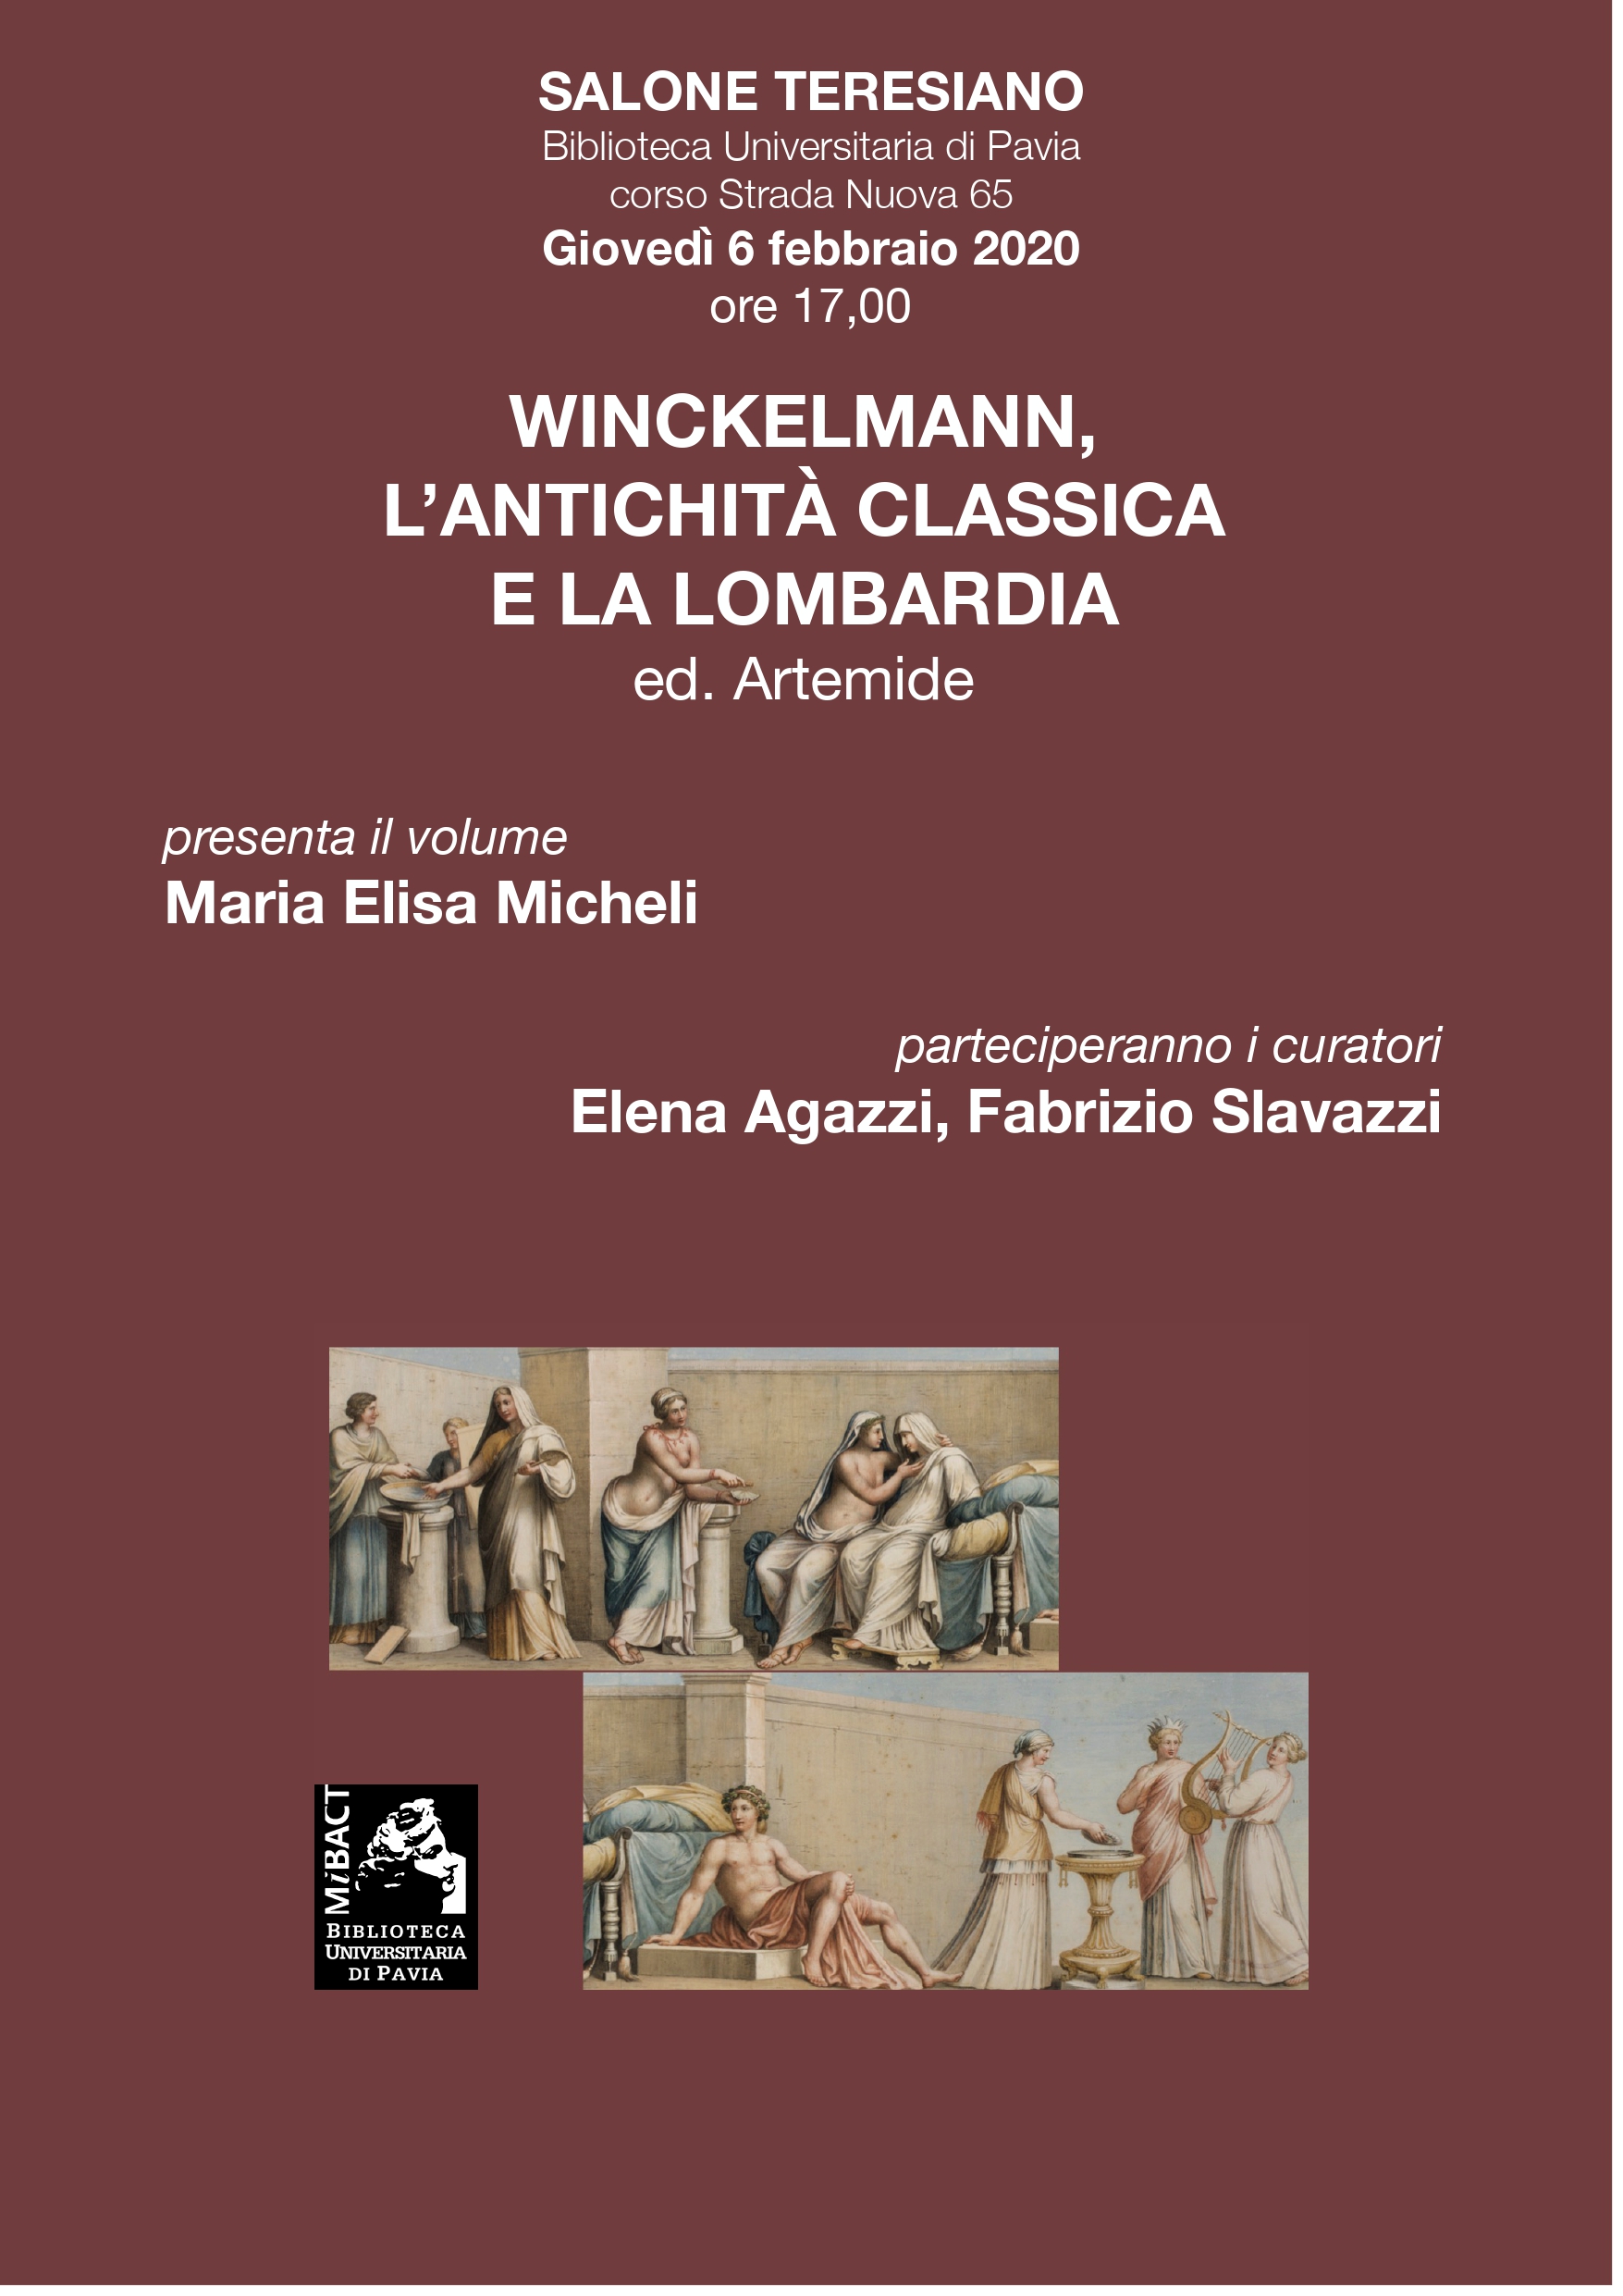 Winckelmann, l’antichità classica e la Lombardia - Locandina